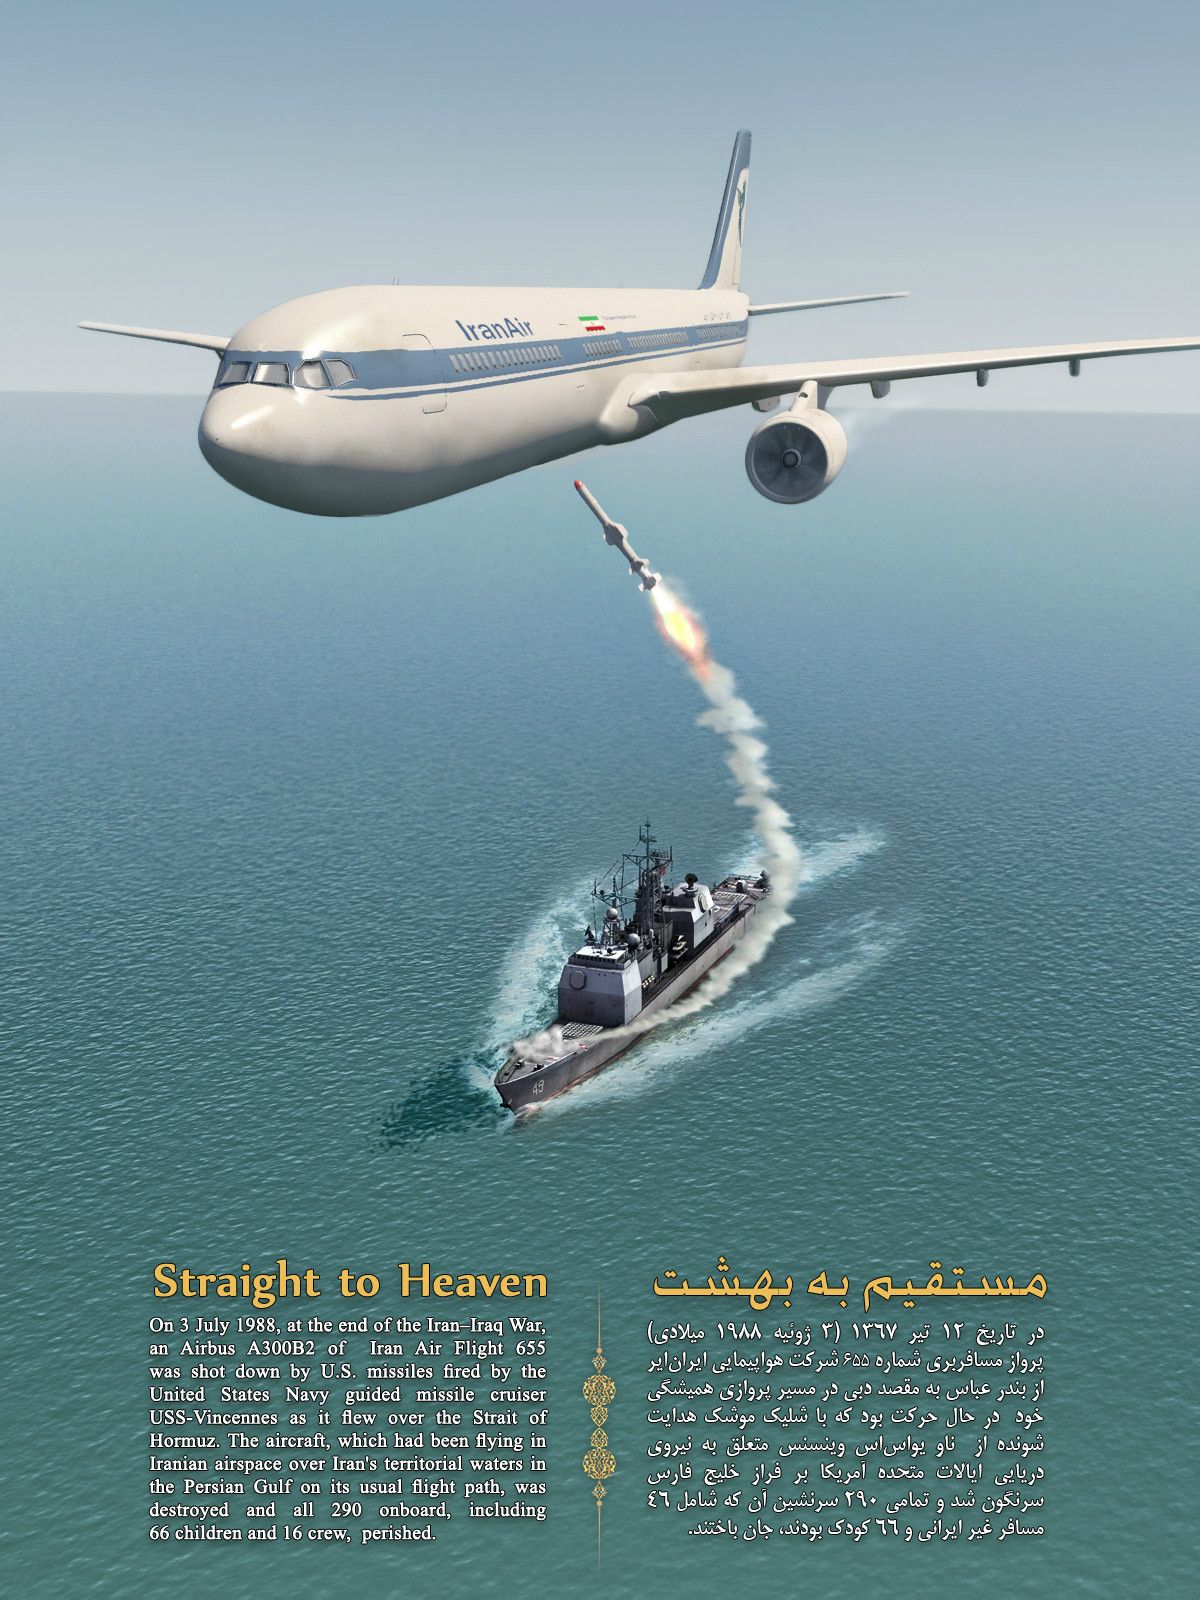 伊朗航空655號班機空難